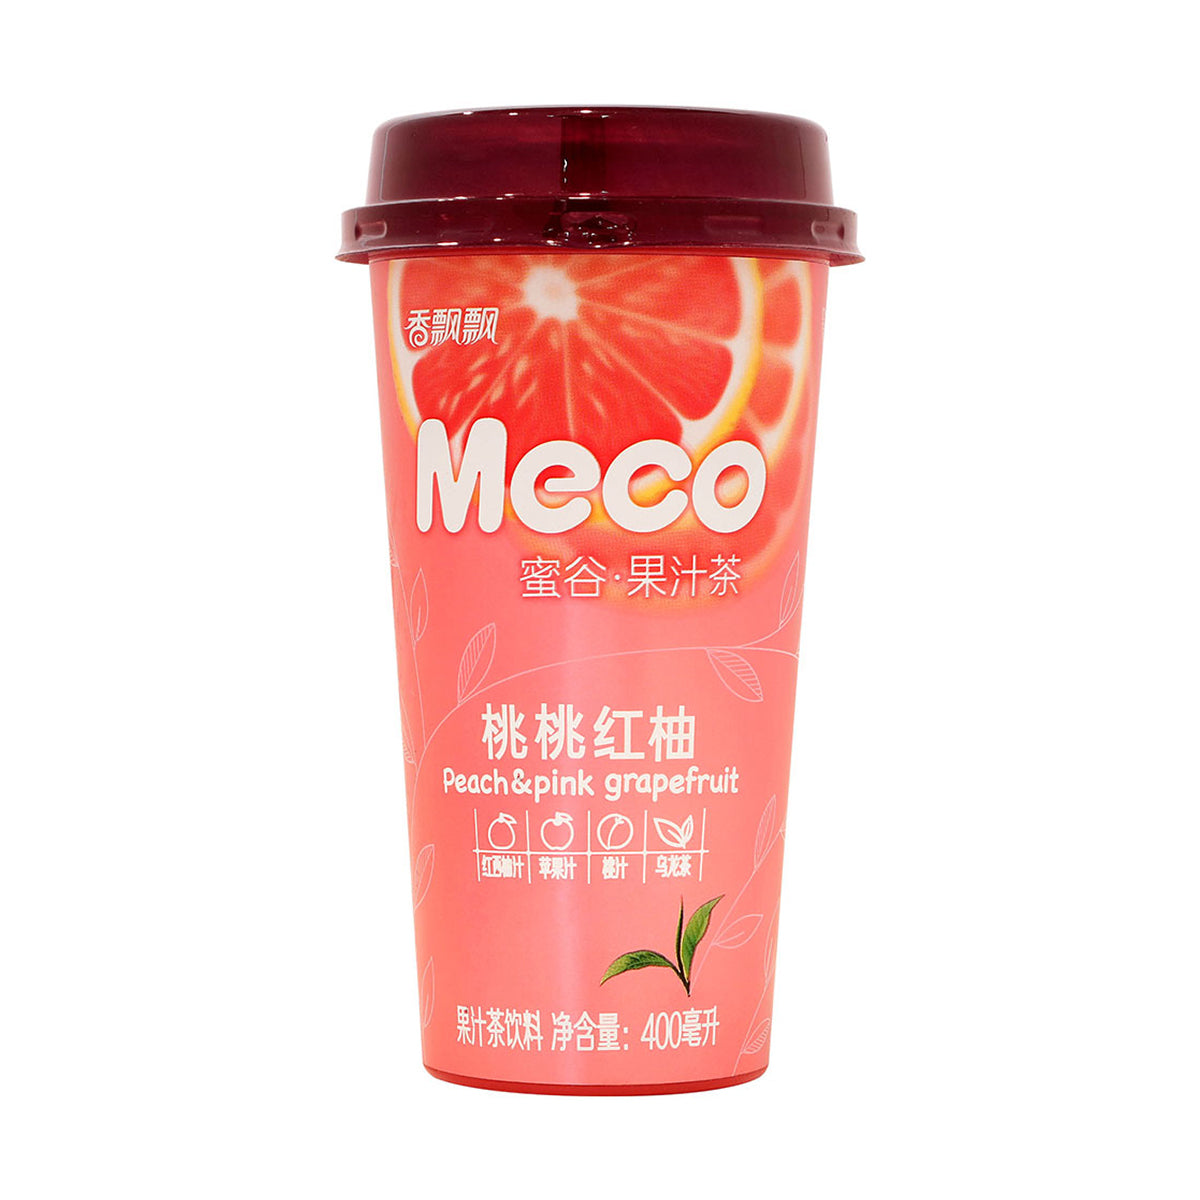 xiang piao piao meco peach & pink grapefruit tea - 400ml